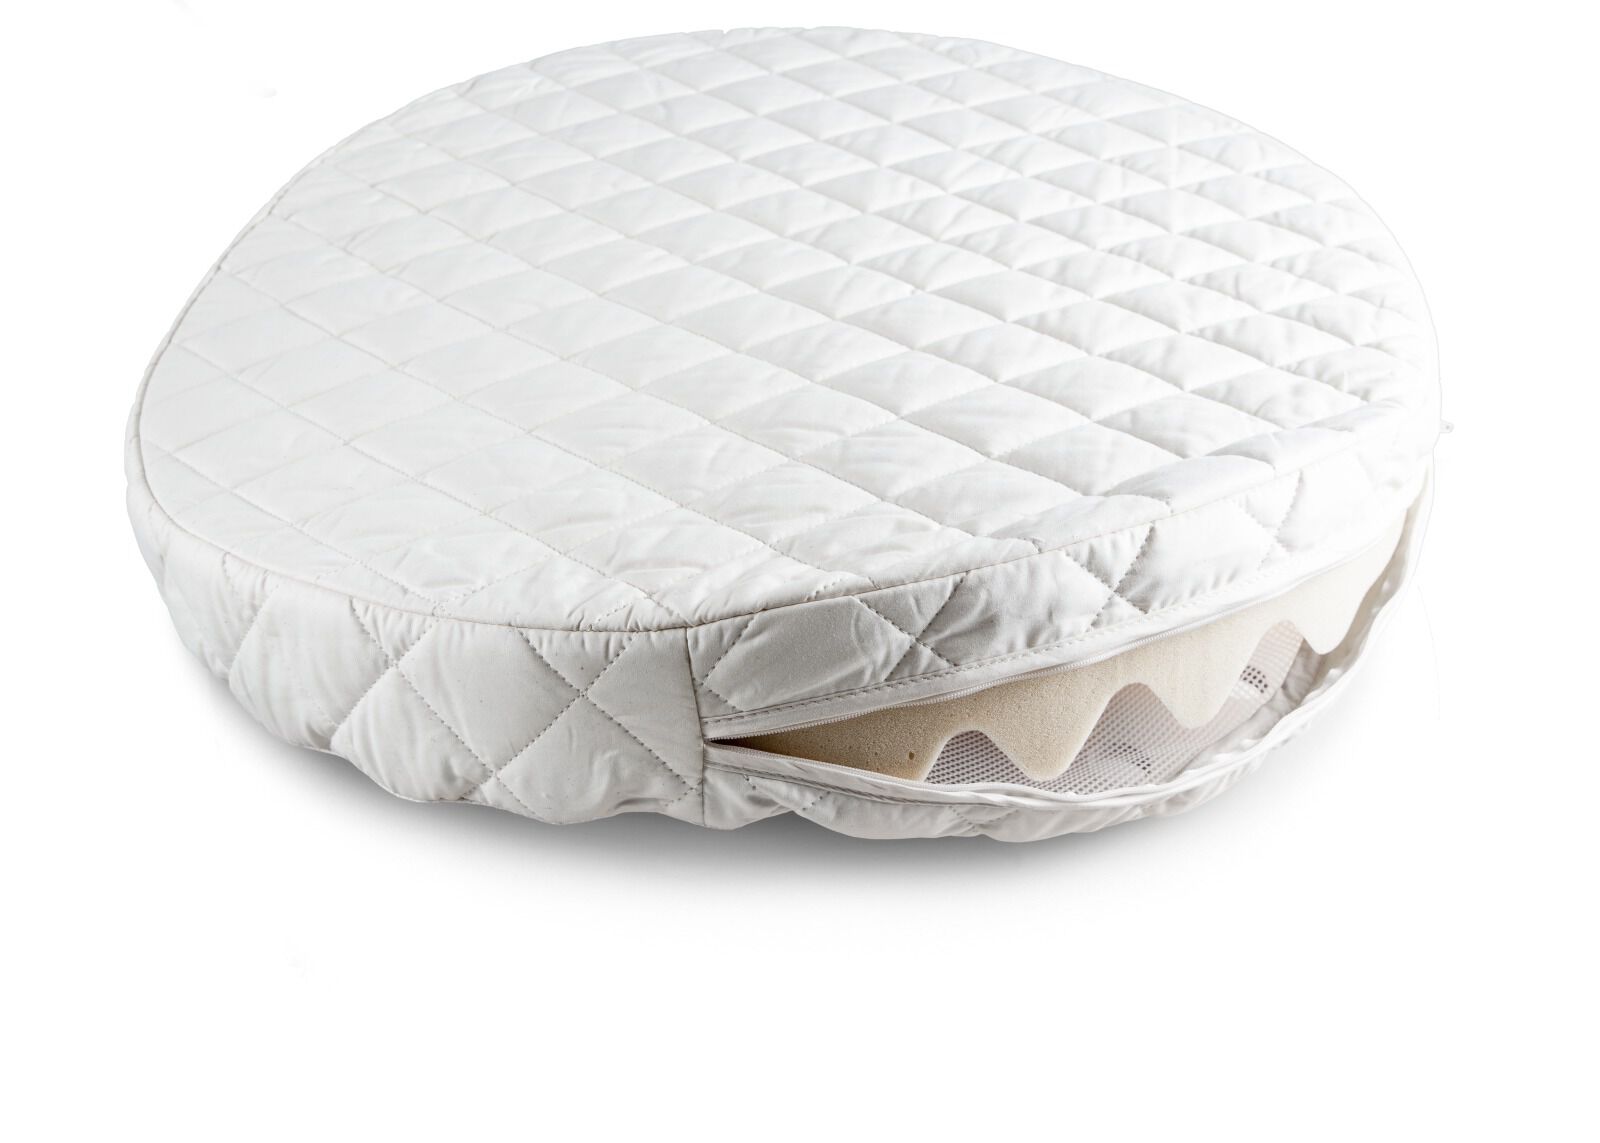 toddler pillow top mattress pad